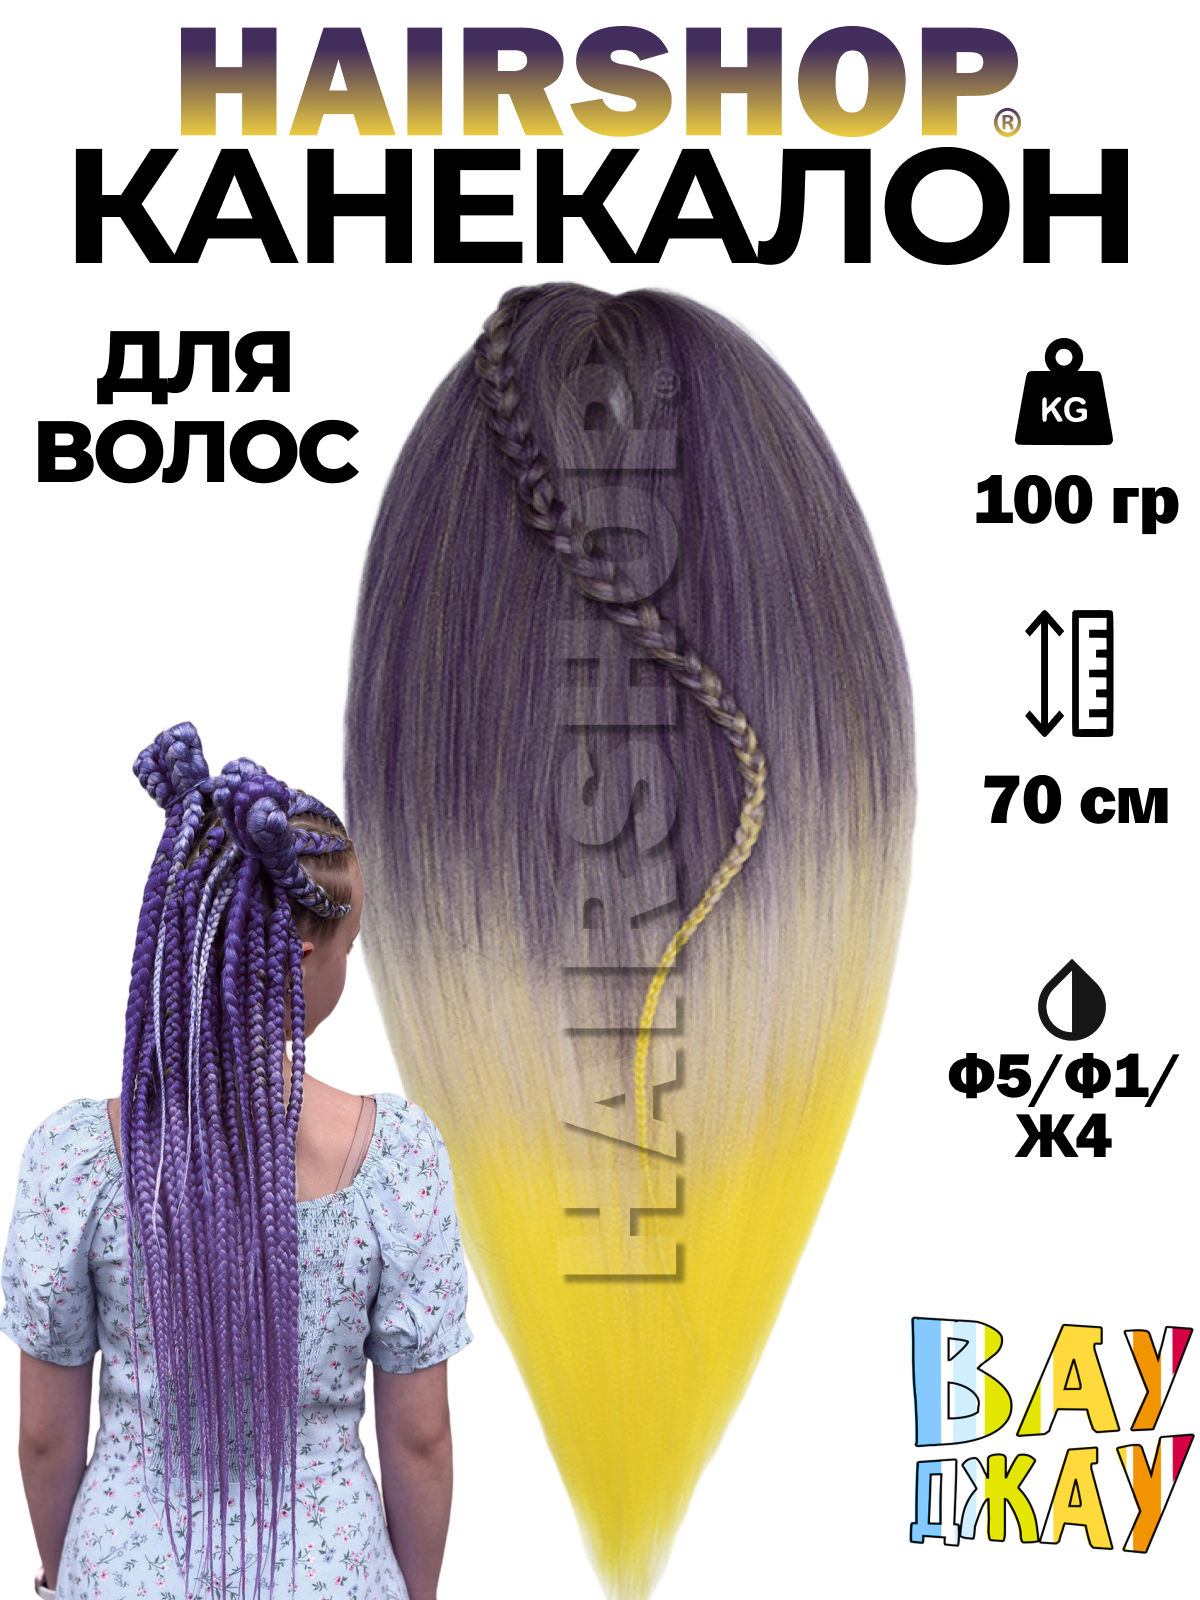 Канекалон HAIRSHOP Вау Джау Ф5-Ф1-Ж4 1,3м 100г Фиолетово-баклажановый, Фиолетовый, Желтый палочки для суши bacchette длина 21 см фиолетовый